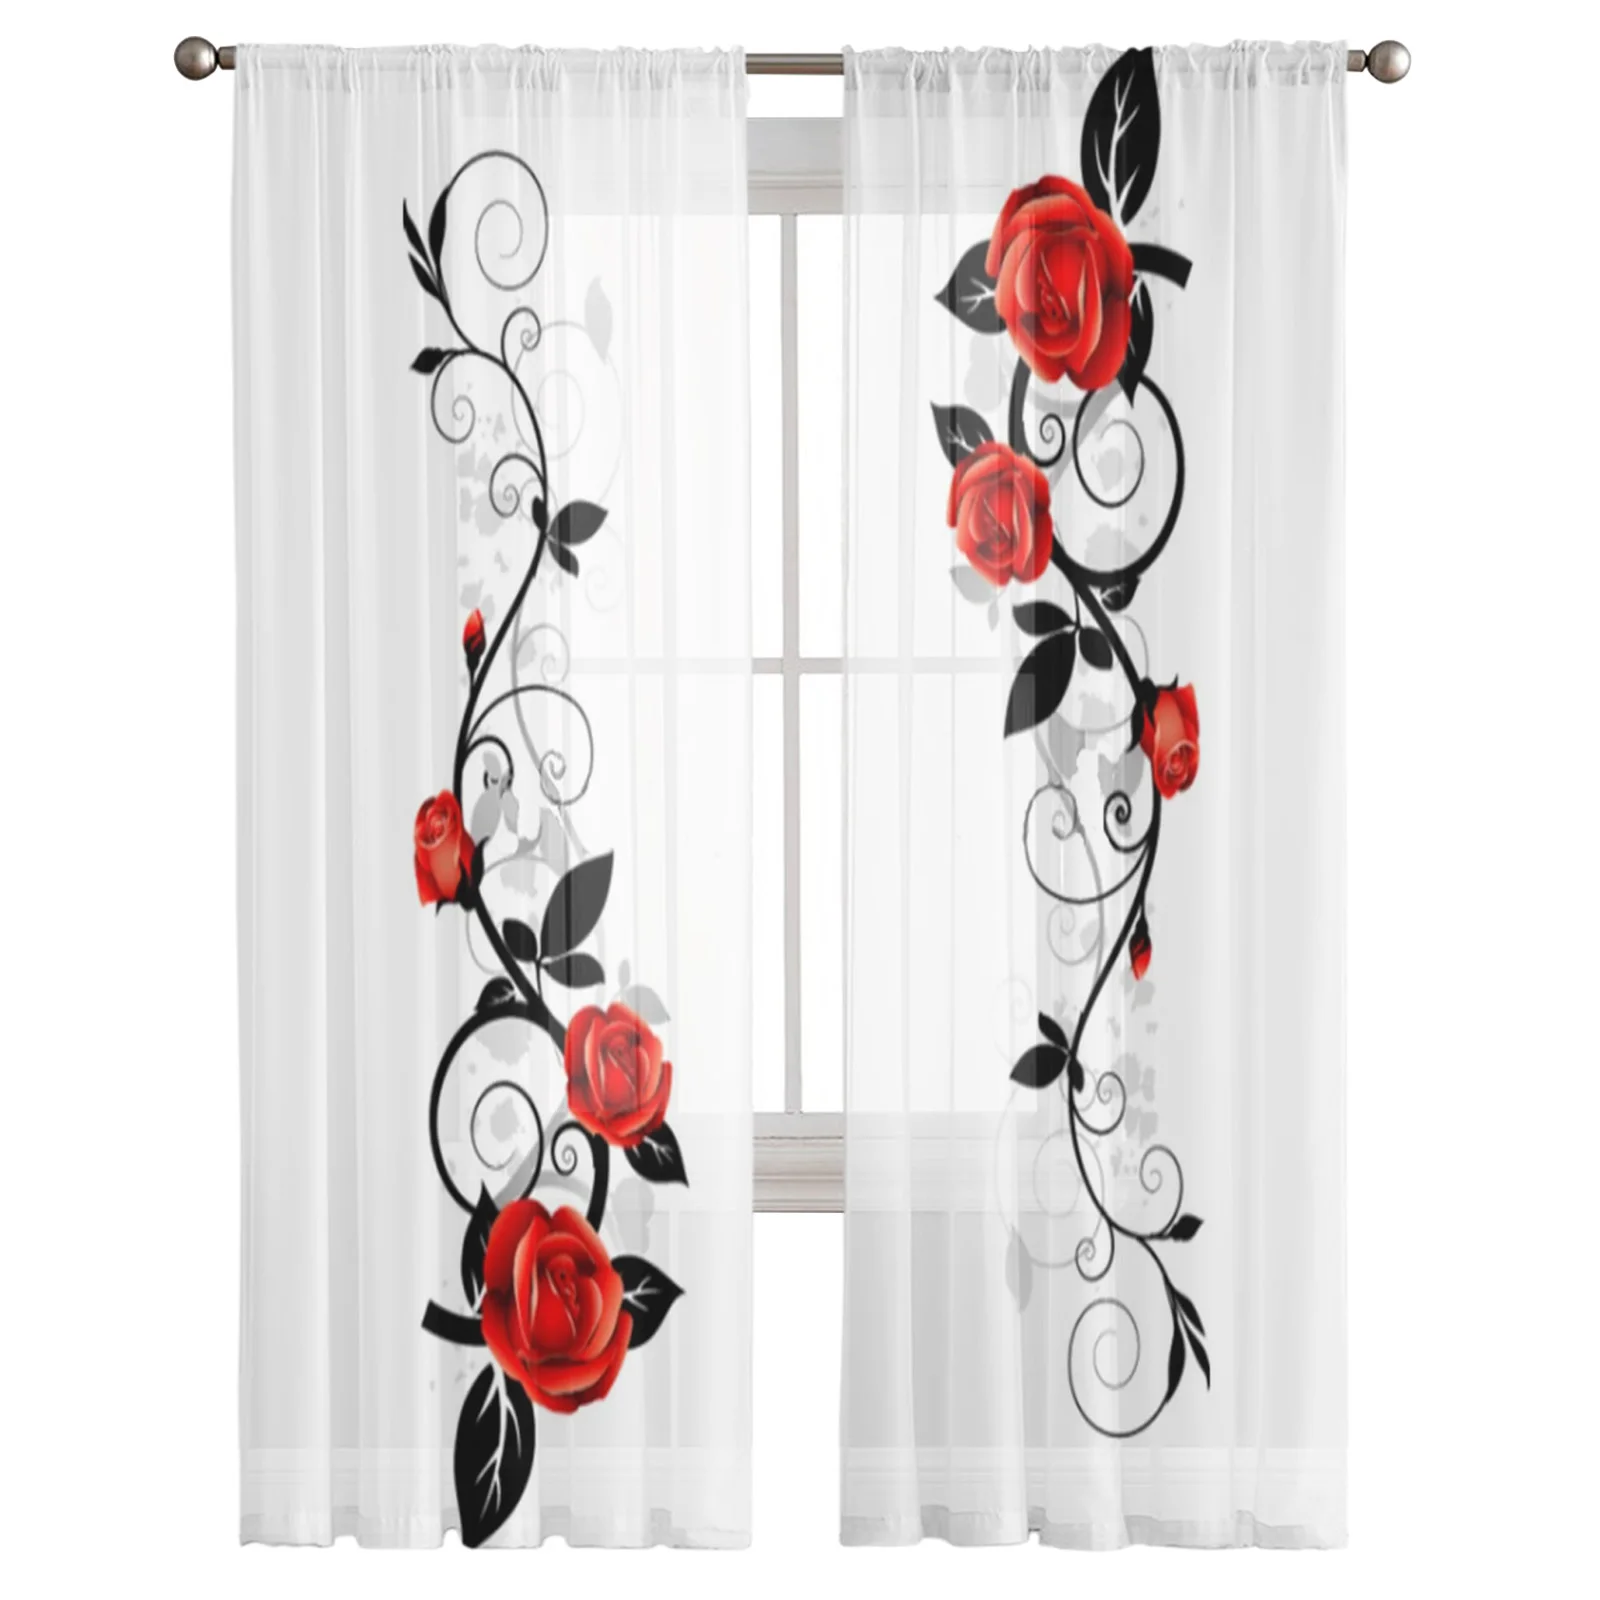 Красные и черные розы прозрачные занавески для гостиной спальни кухни оконные обработки панели драпировки.